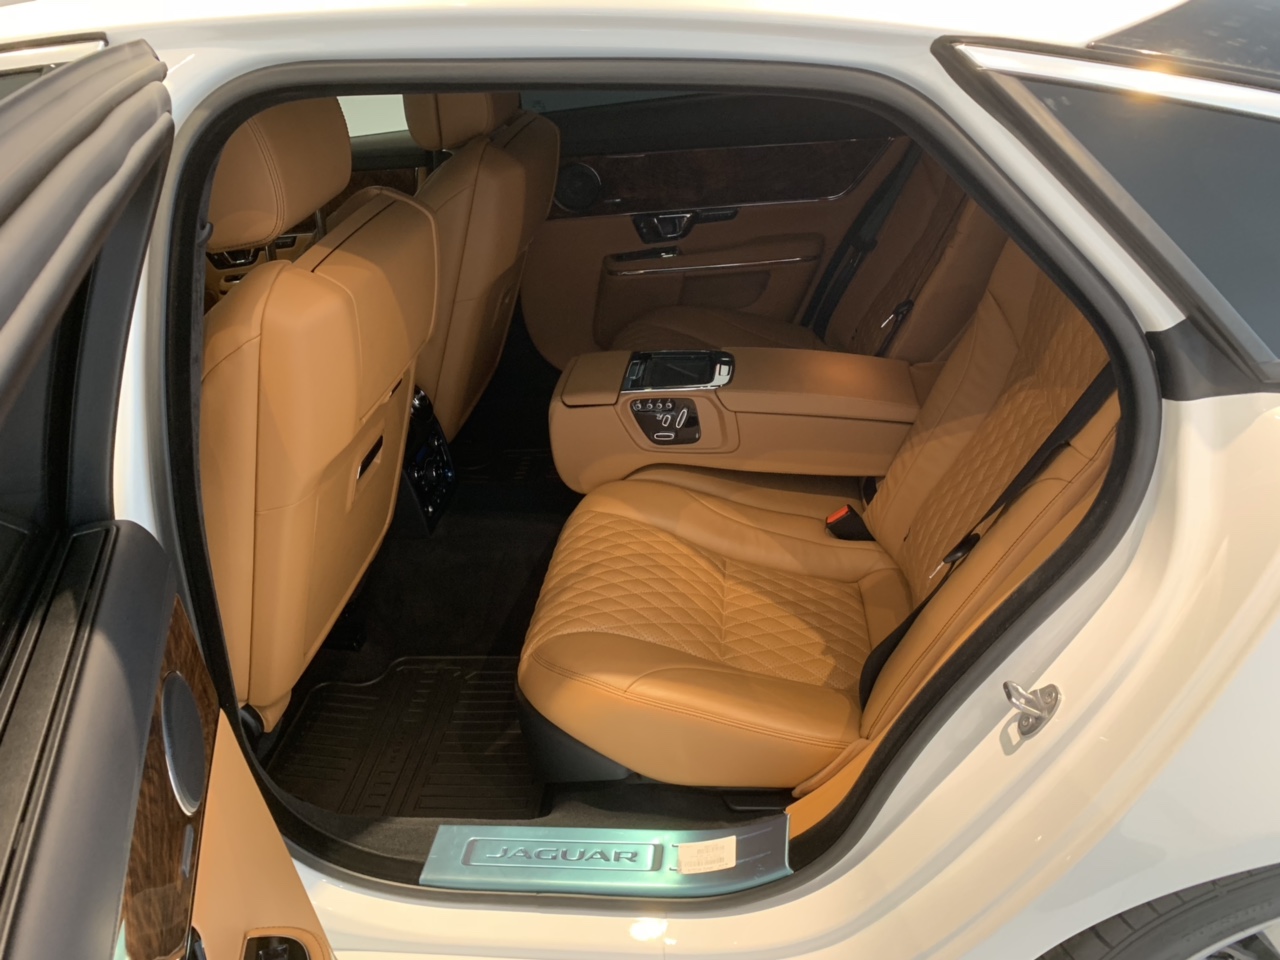 Giá Xe Jaguar XJL Phiên Bản 3.0 V6 Đời Mới Model 2019 Bao Nhiêu Tiền, Mẫu Sedan cao cấp cua thương hiệu Jaguar Anh QUốc được nhập khẩu trực tiếp từ nước Anh về Việt Nam với mức giá 6,6 tỷ